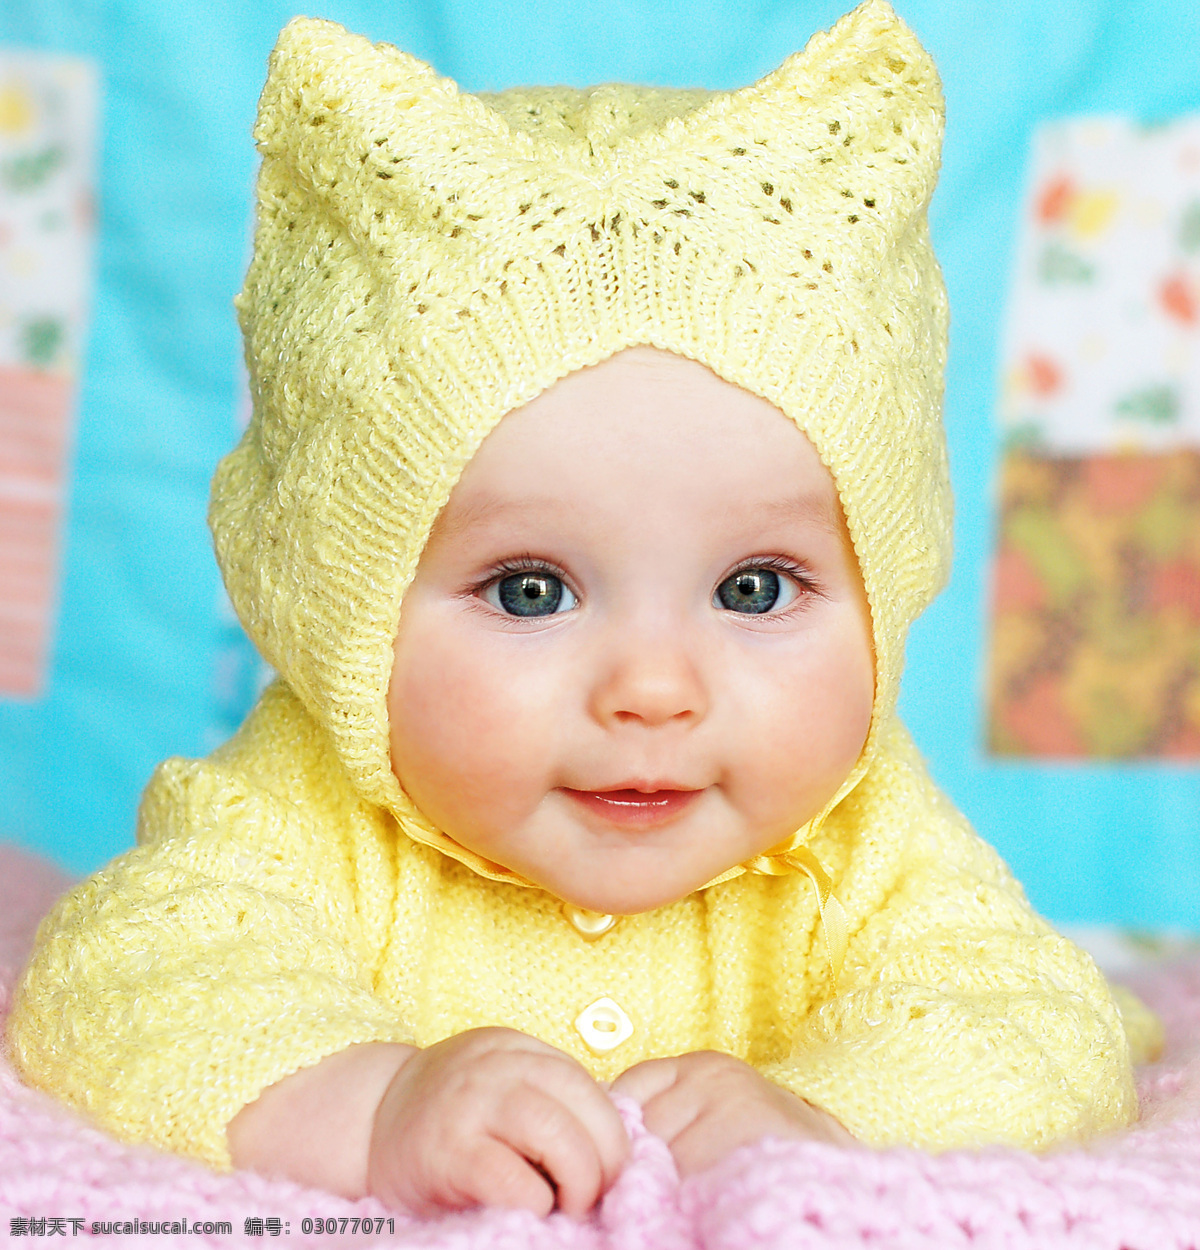 黄色 衣服 可爱 婴儿 宝宝 出生婴儿 快乐儿童 小孩子 baby 儿童幼儿 宝宝摄影 宝宝图片 人物图片